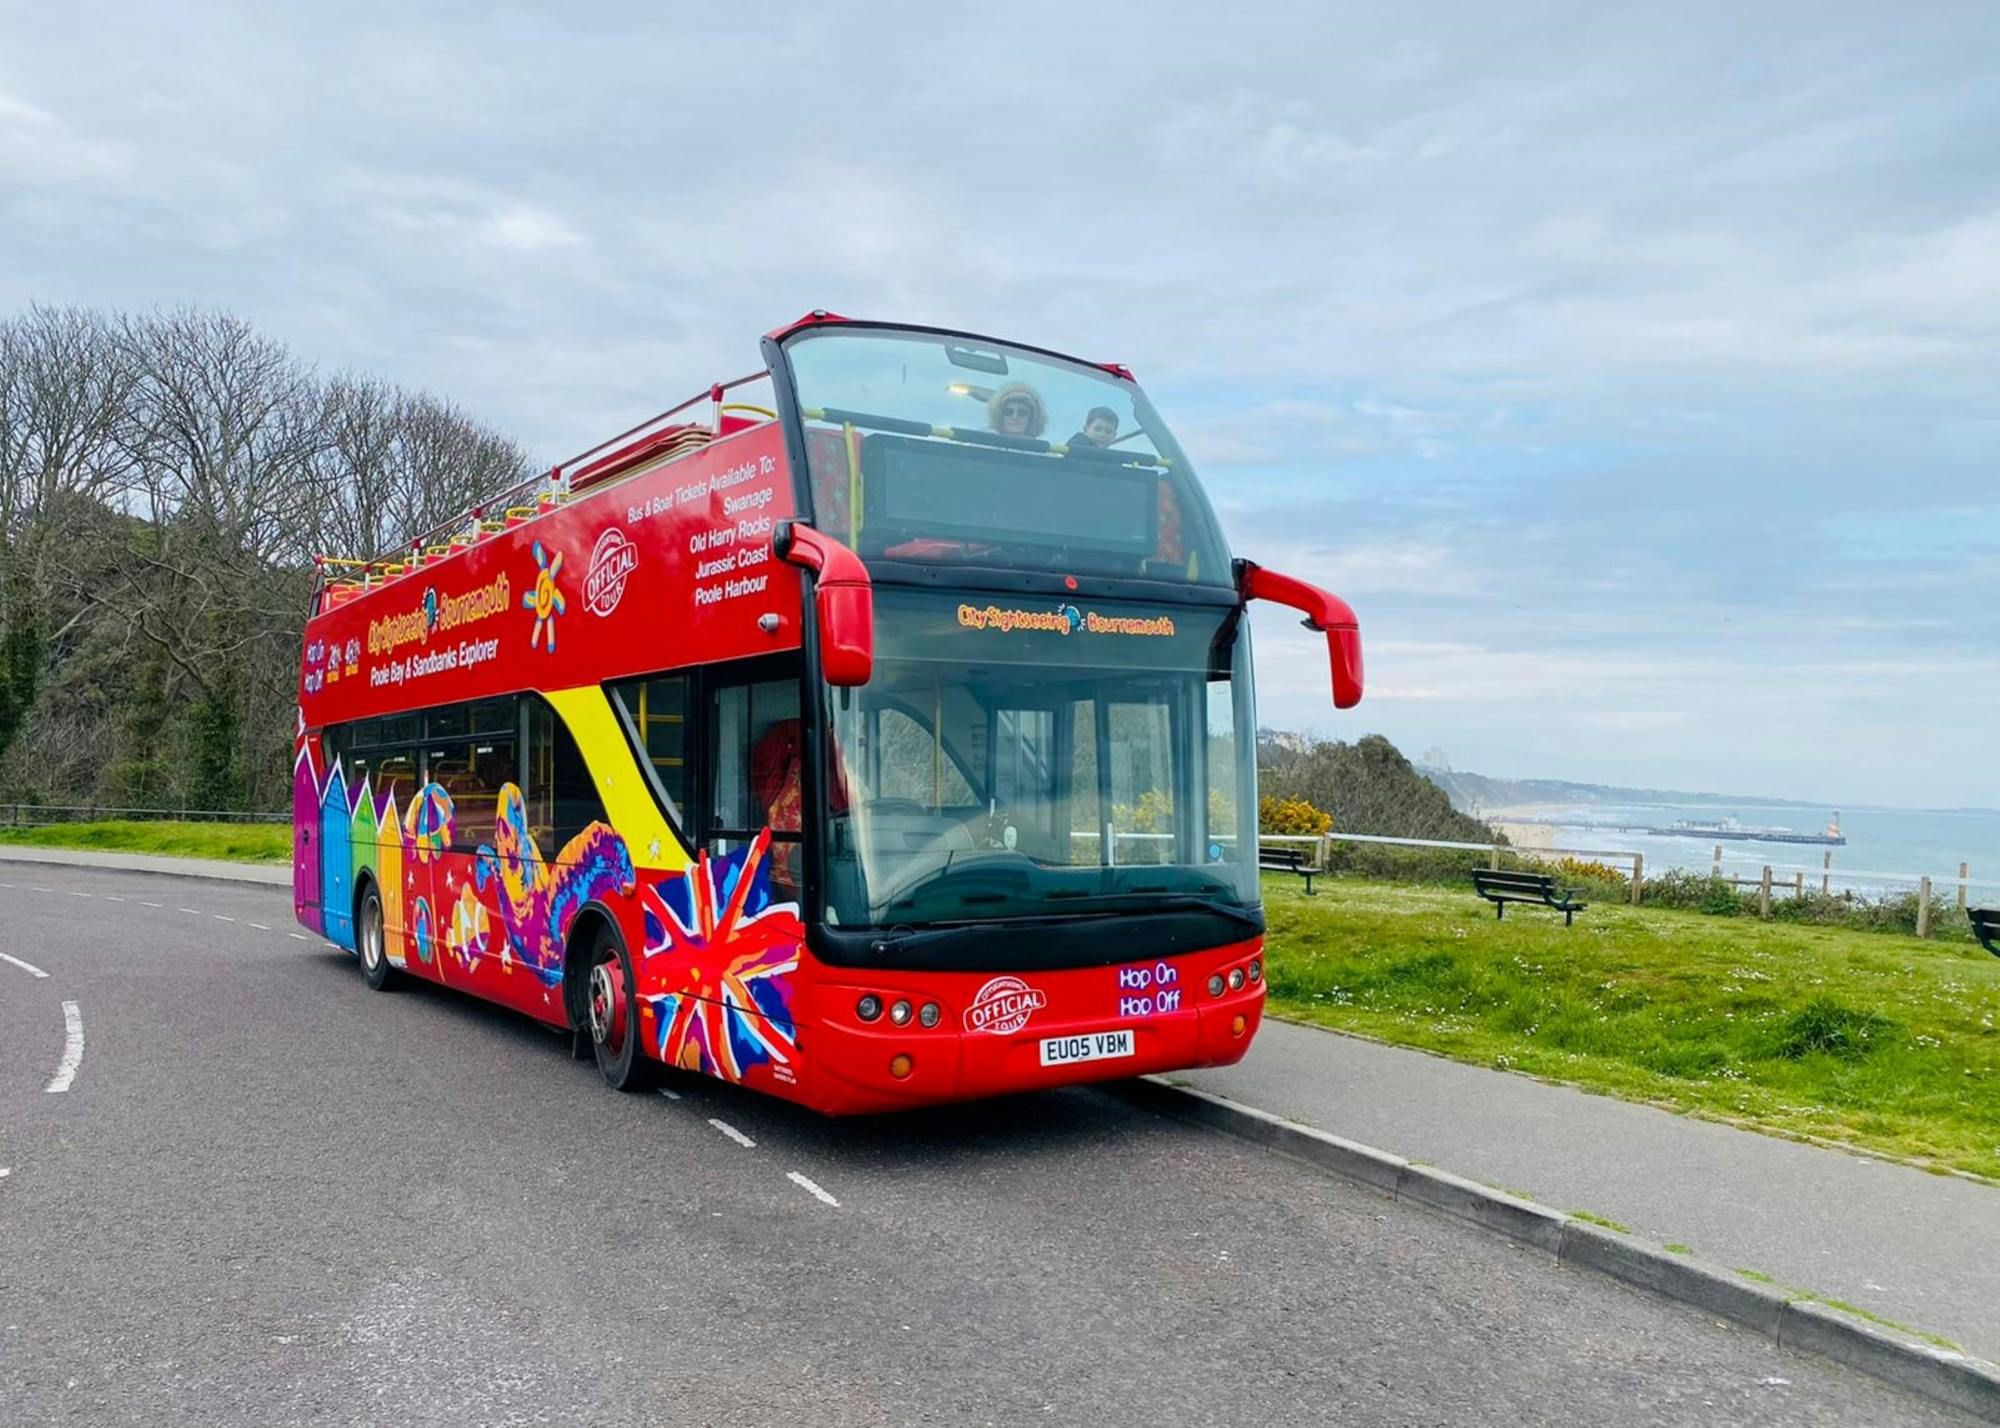 Wycieczka autobusowa City Sightseeing po Bournemouth z możliwością wsiadania i wysiadania na dowolnych przystankach